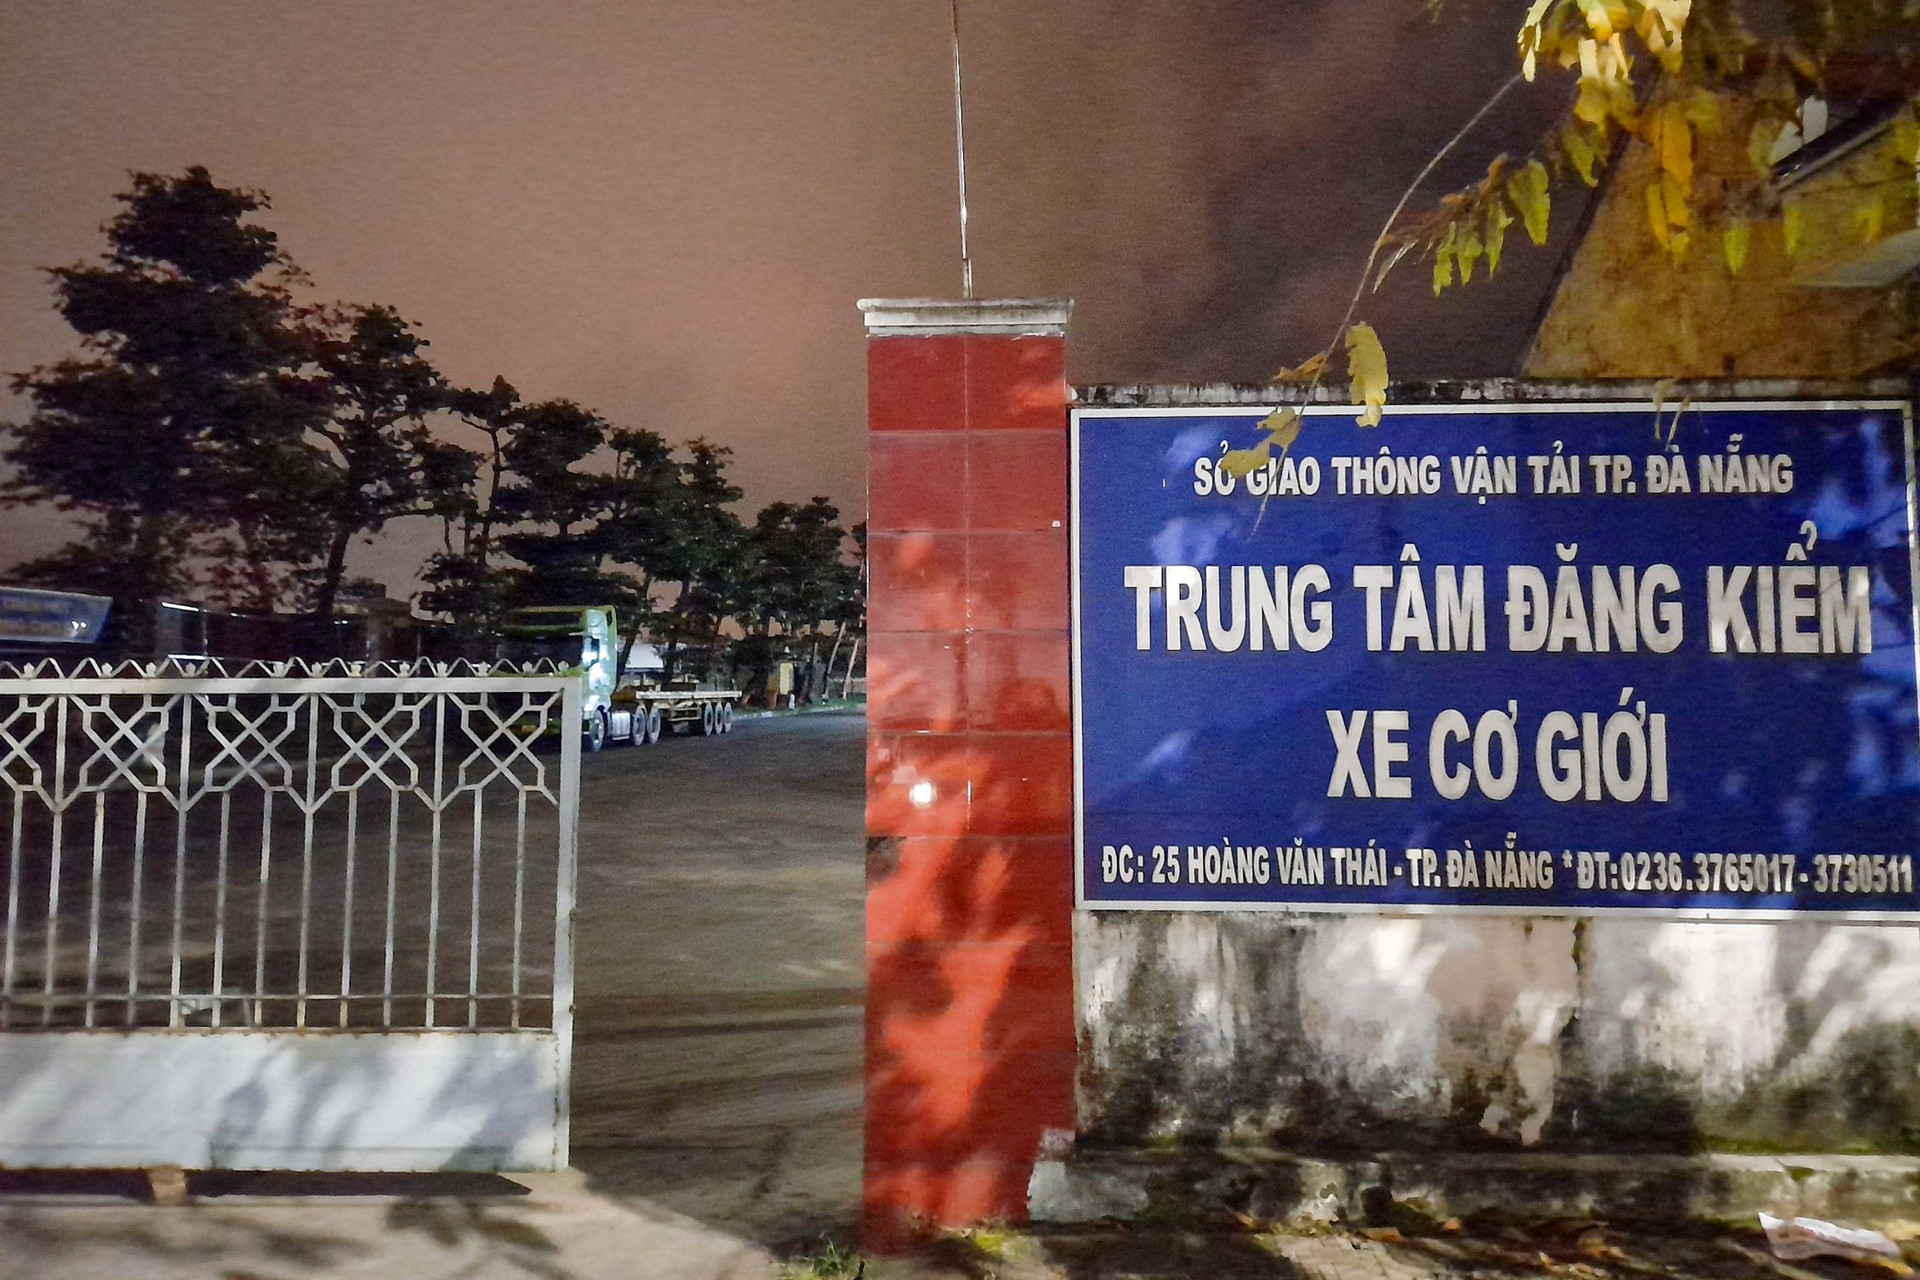 Khám xét 2 trung tâm đăng kiểm xe cơ giới tại Đà Nẵng - 1